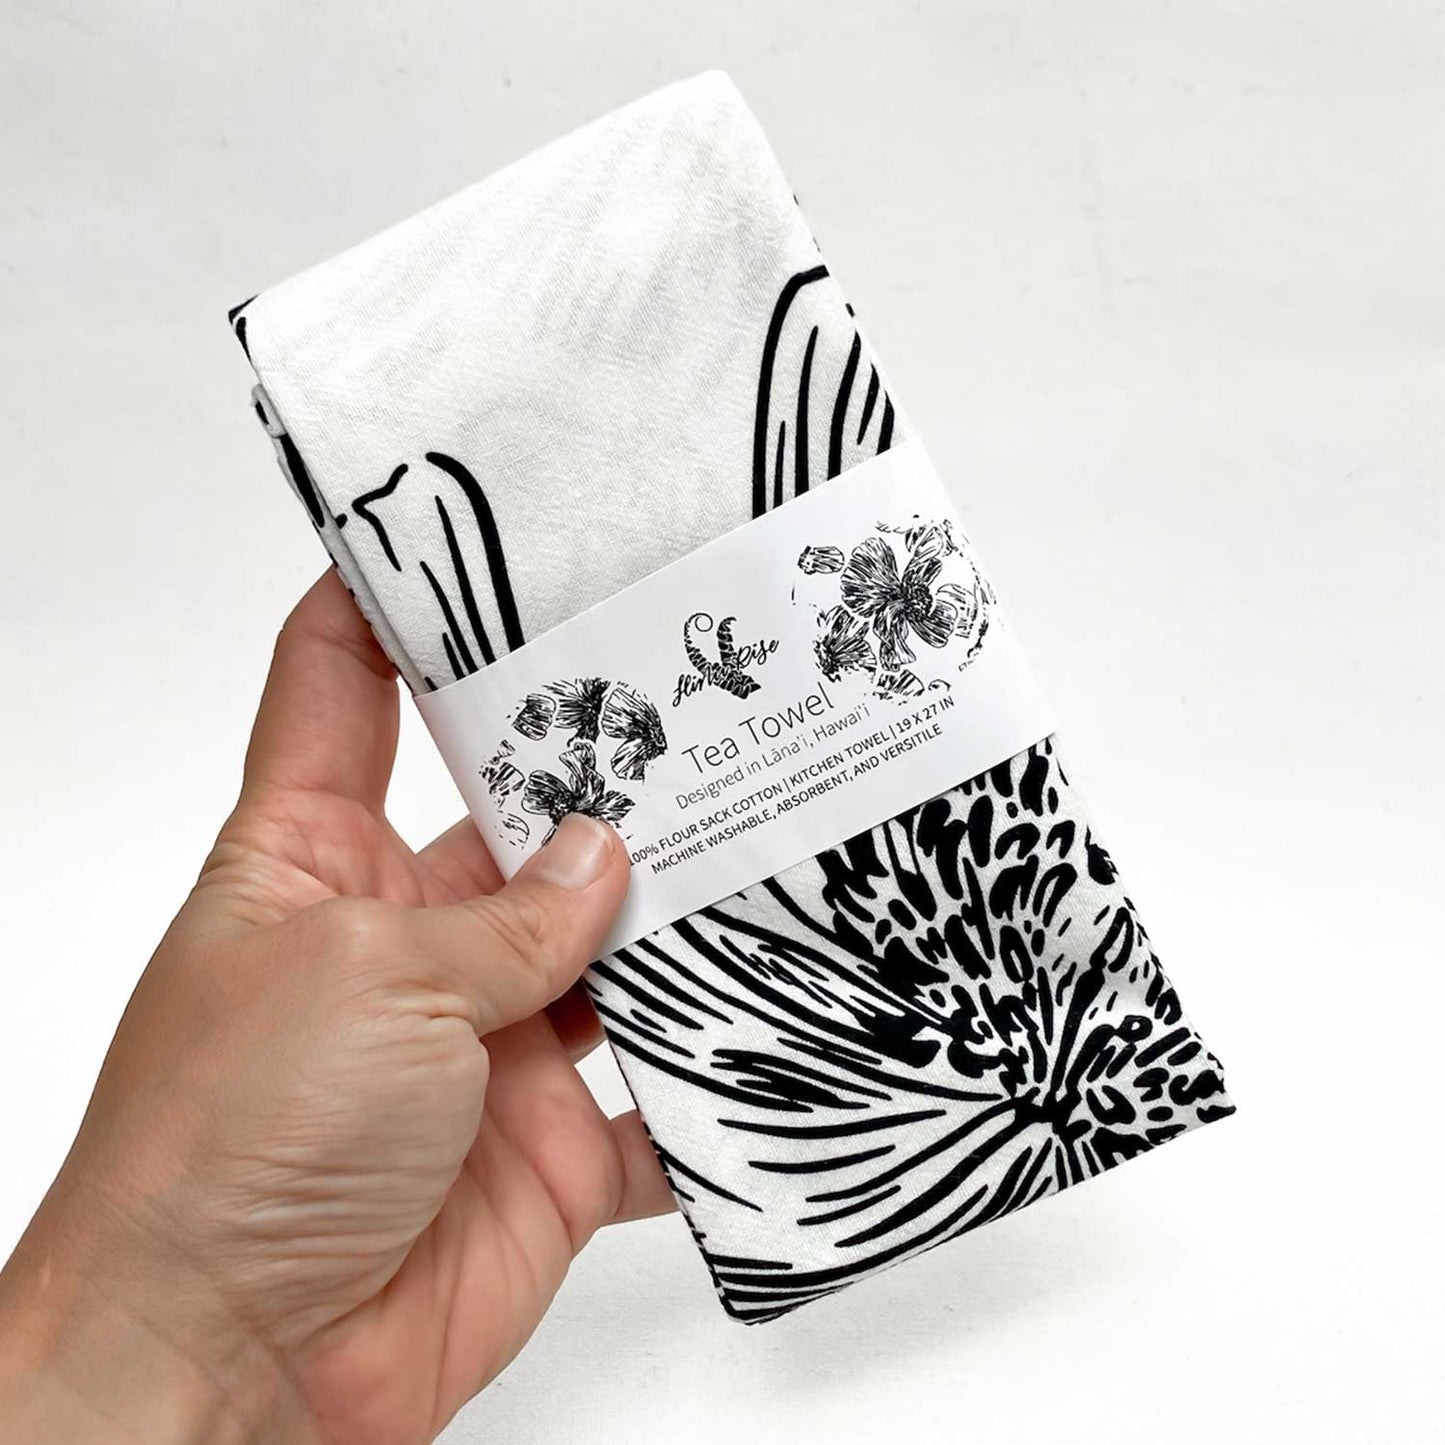 19" x 27" Cotton Flour Sack Tea Towel - Pua Kala Black & White